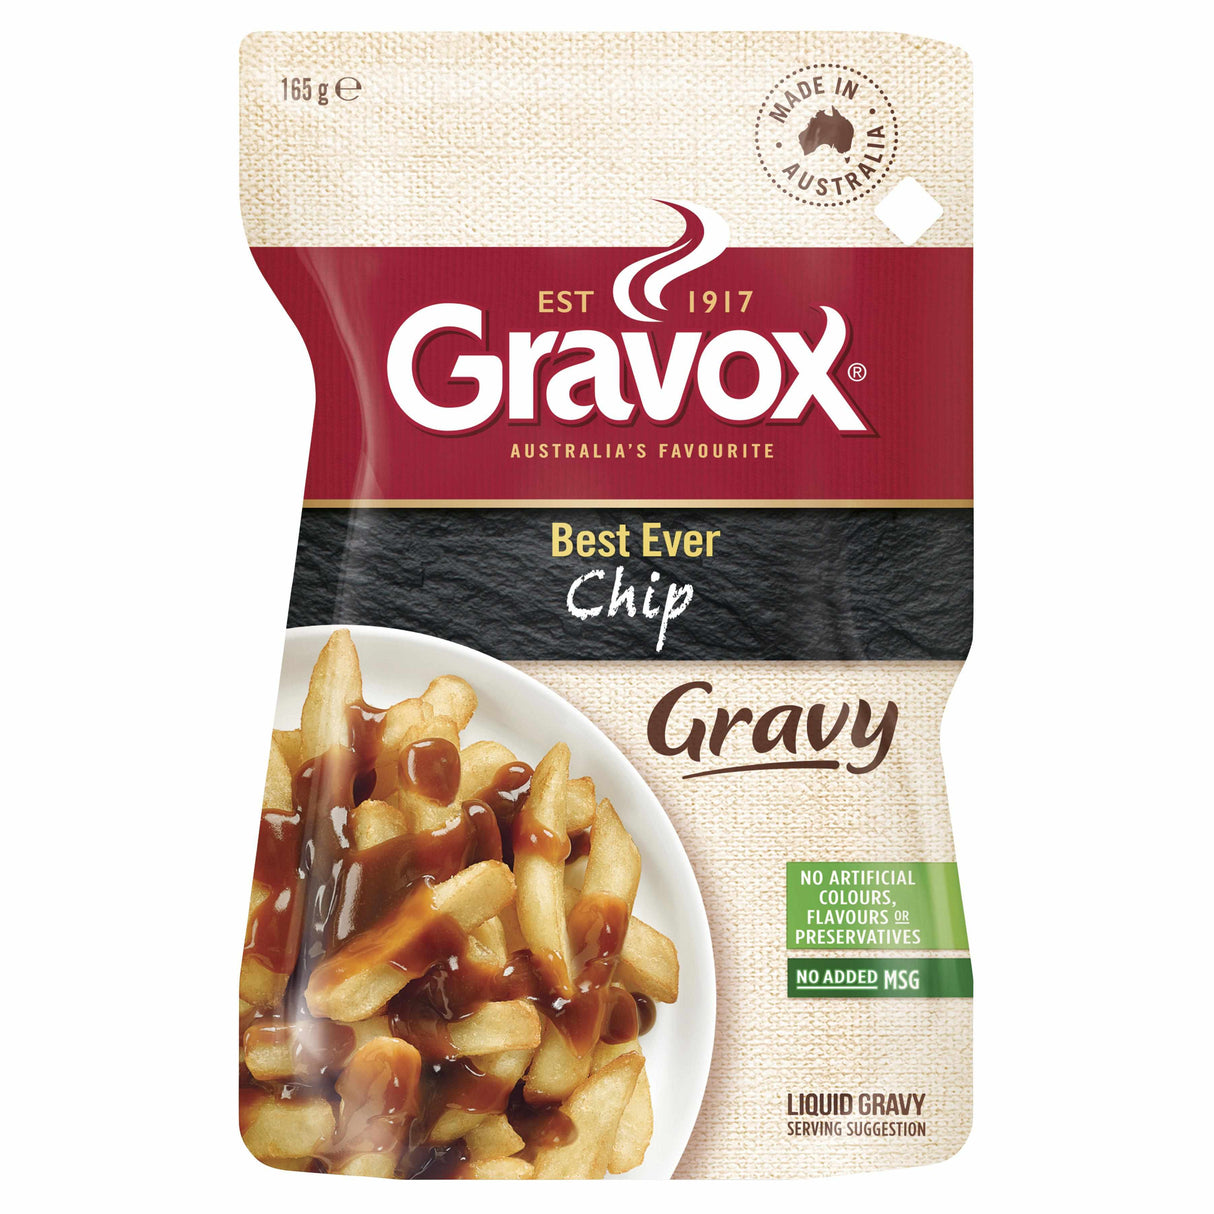 Gravox Best Ever Chip Gravy Pouch 165g